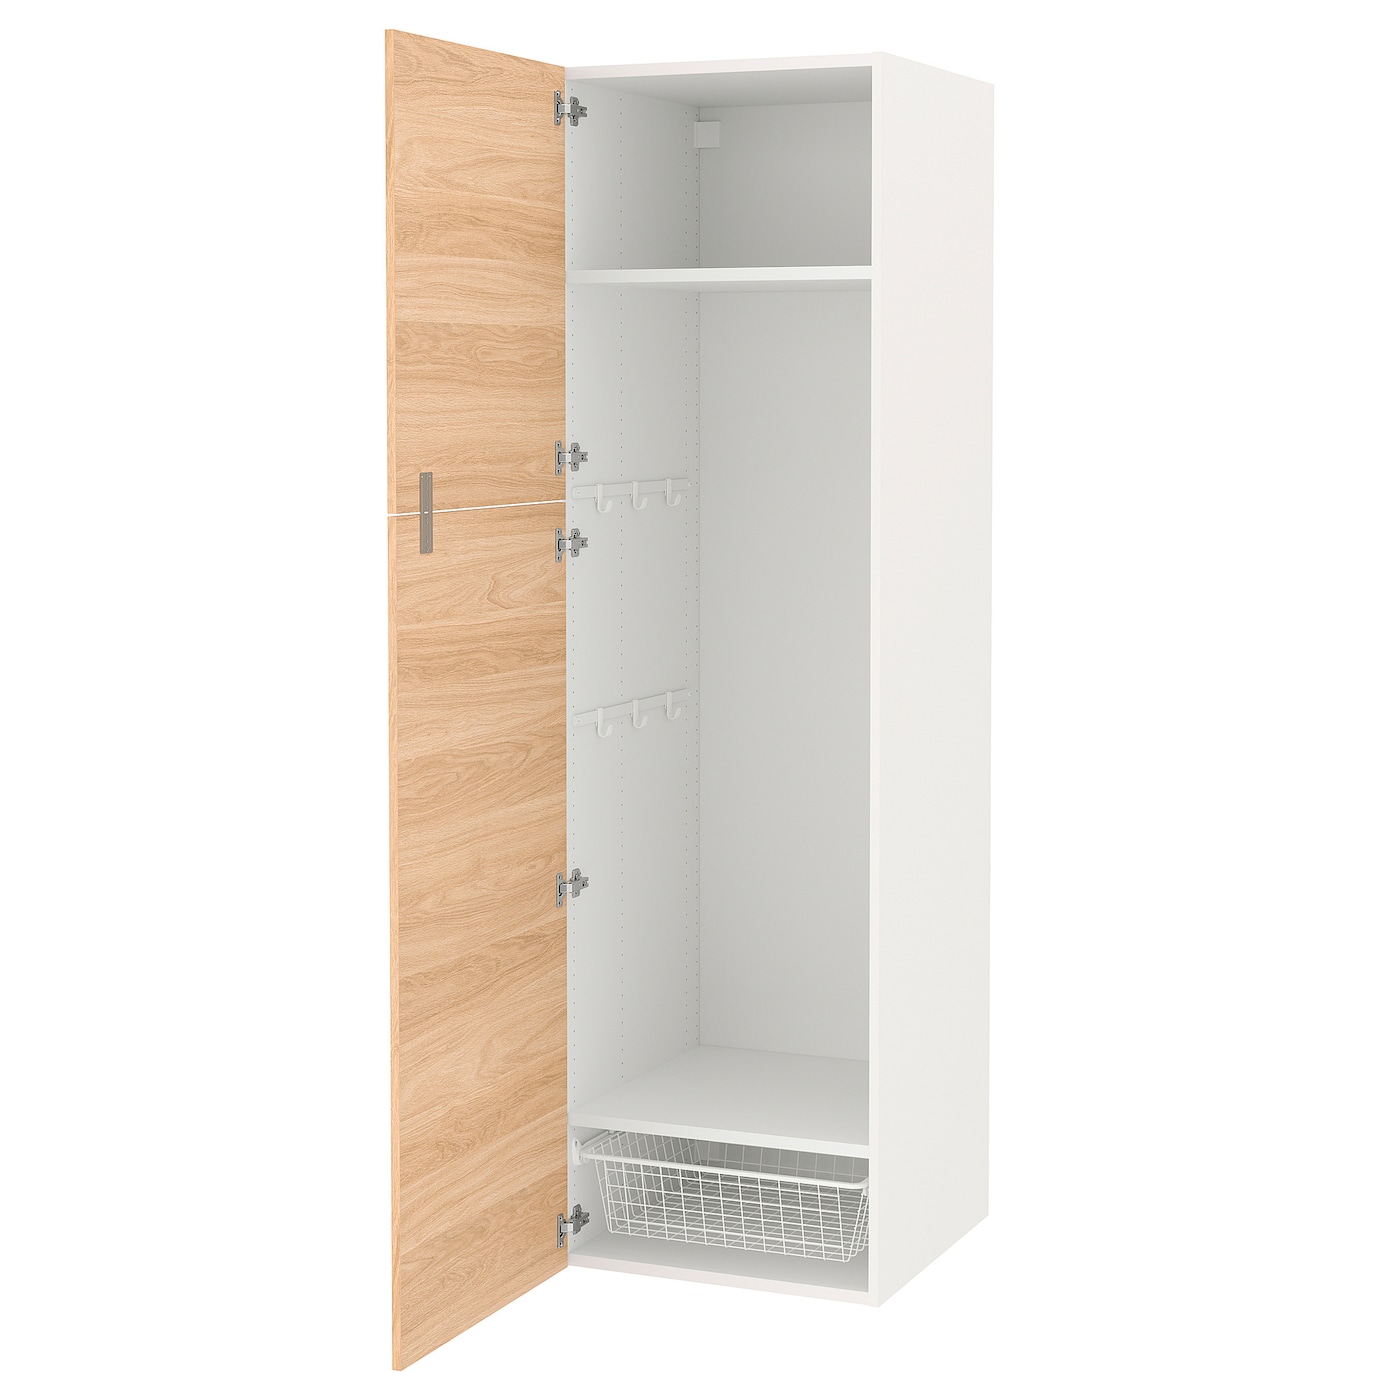 Высокая тумба для ванной - ENHET  IKEA/ЭНХЕТ ИКЕА, 60x62x210 см, белый/бежевый